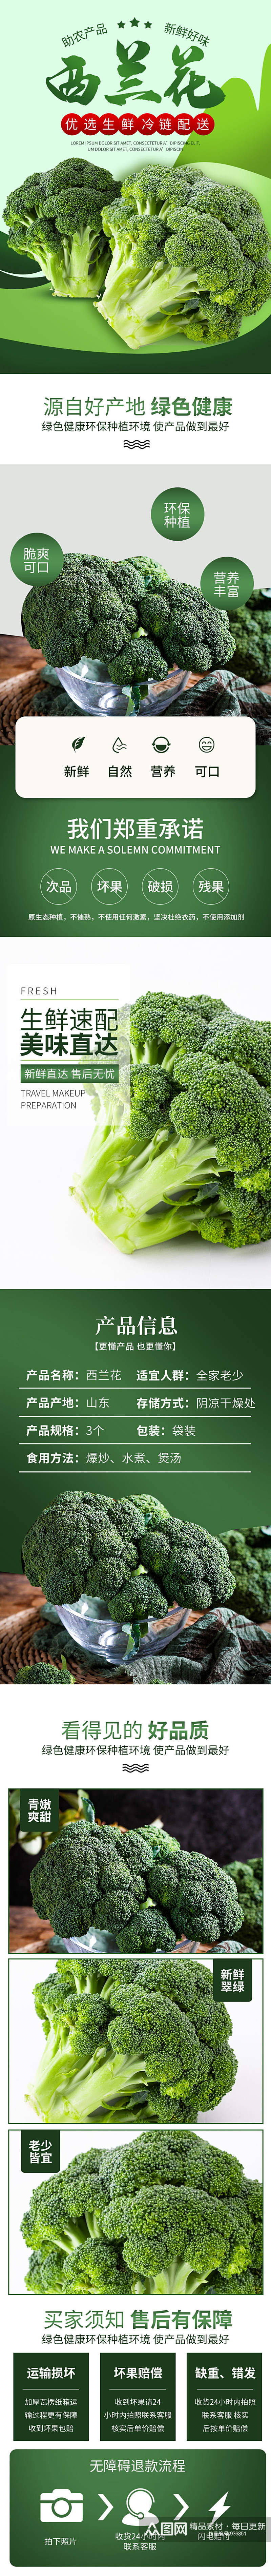 蔬菜生鲜商超市西兰花青菜果蔬瓜果详情页素材